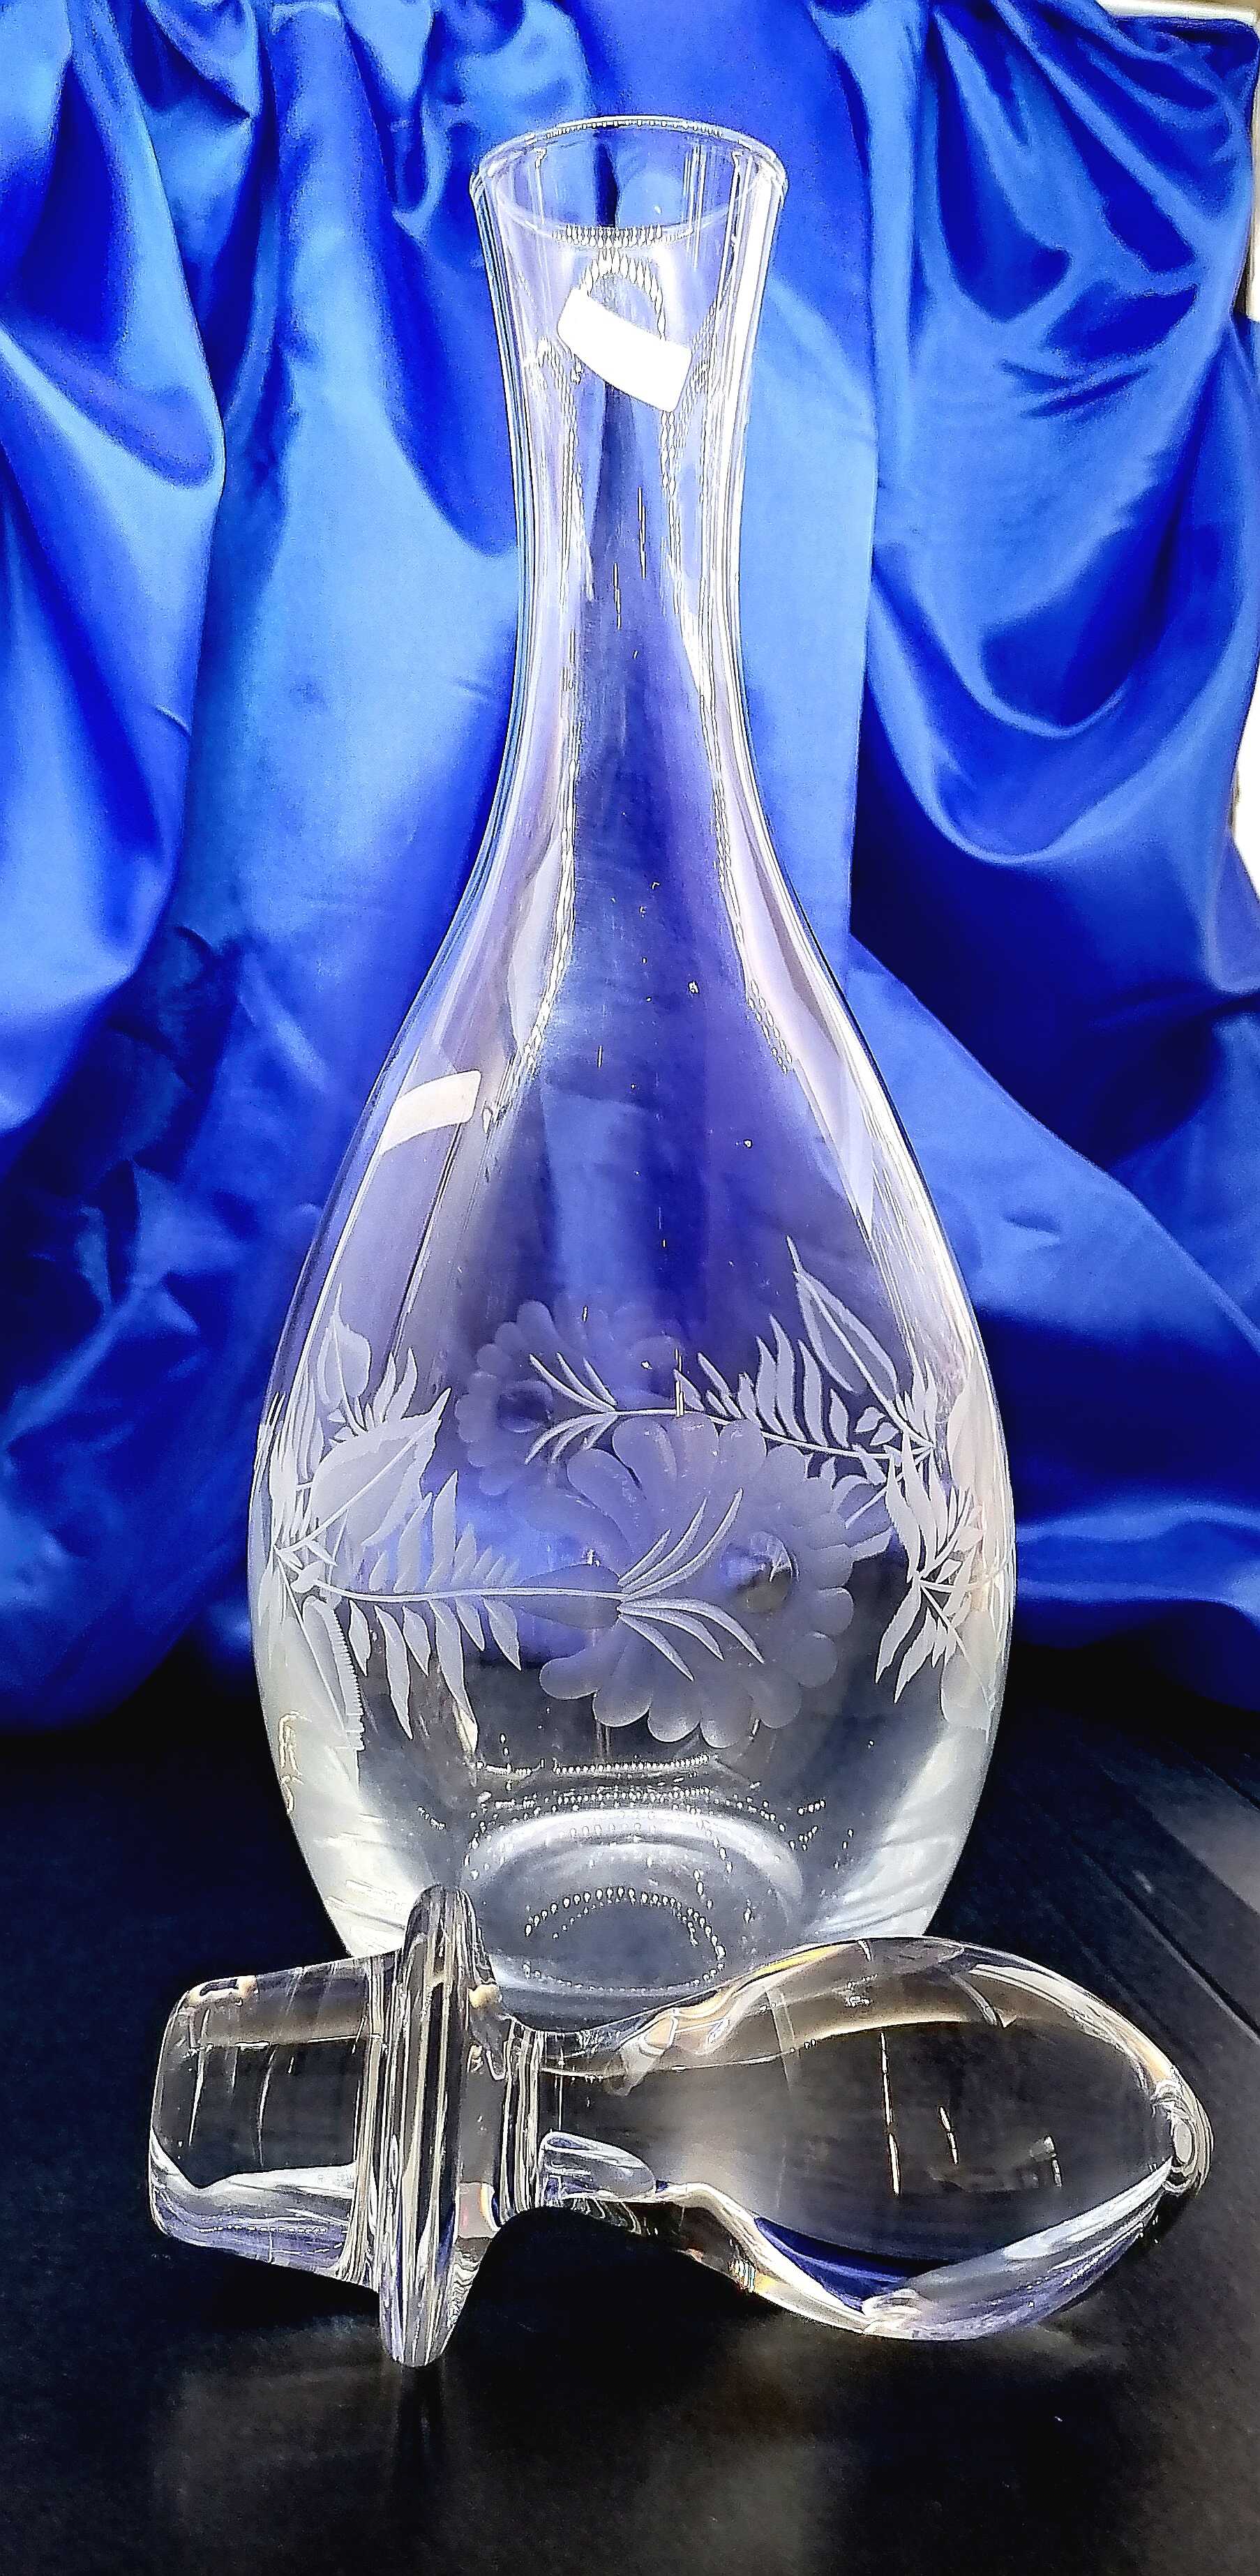 Flasche für Wein Kristallglas mit Stőpsel Hand geschliffen Muster Alt Rose LA-296 1000ml 1 Stück.